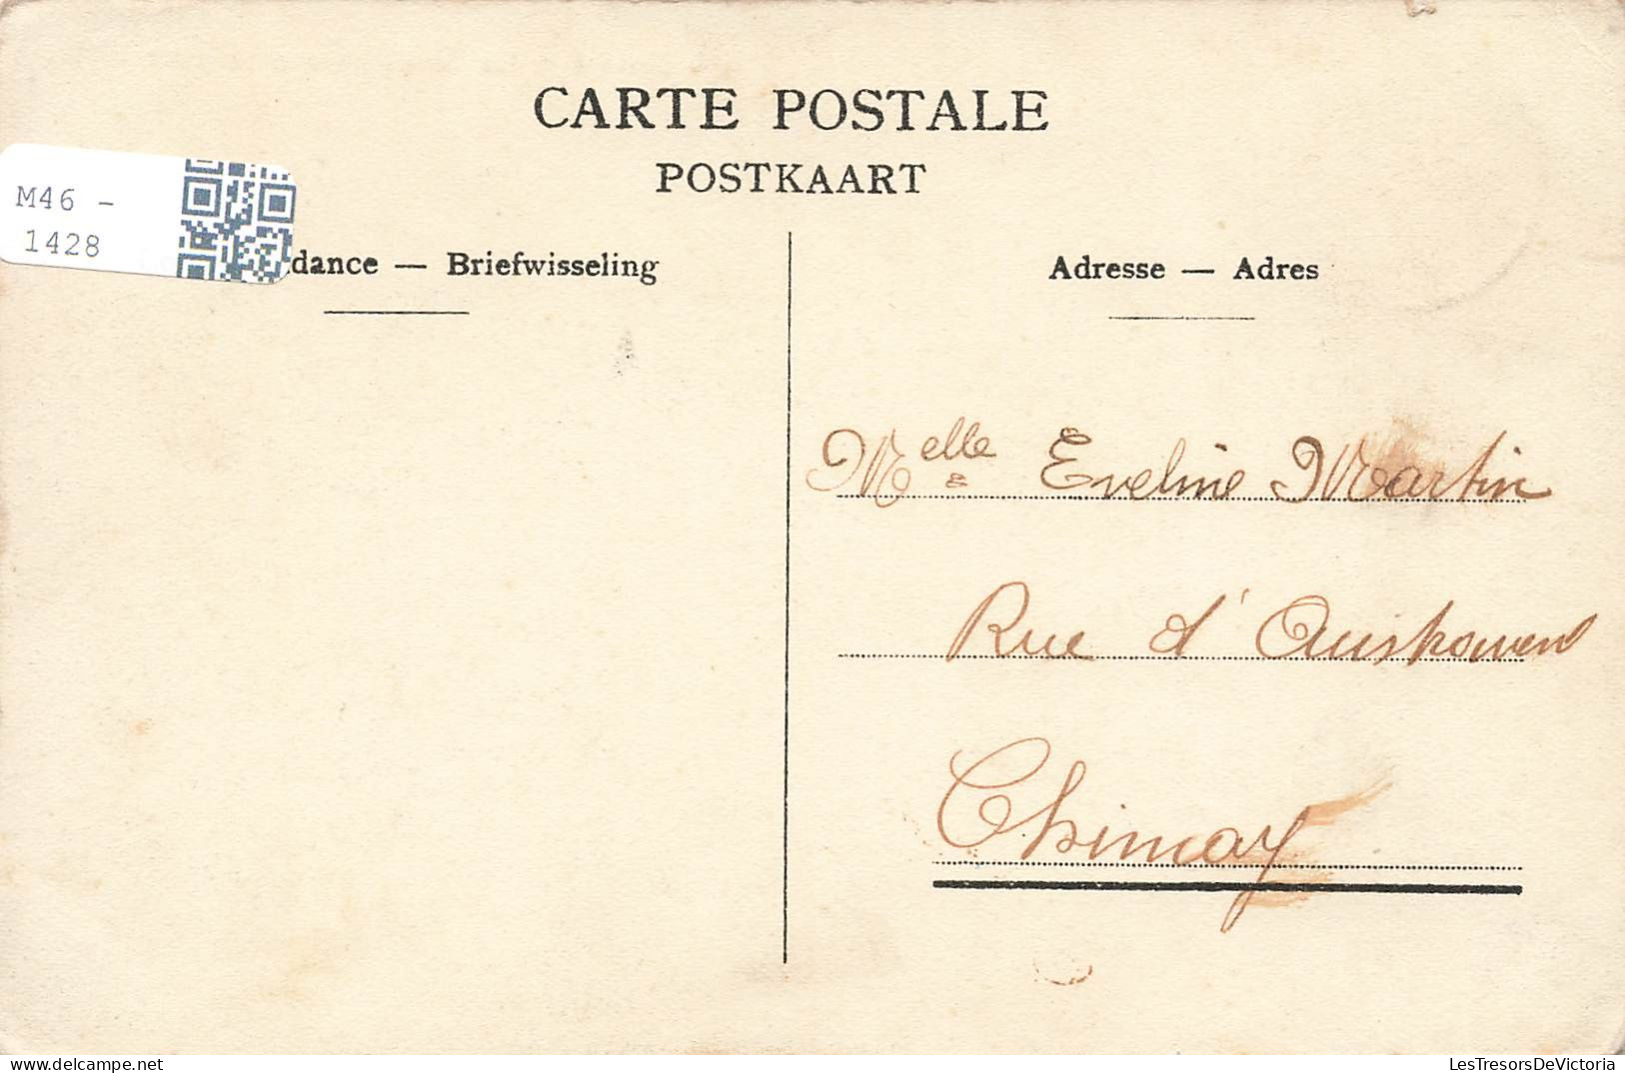 BELGIQUE - Dinant - La Citadelle - Vue Du Pont - Carte Postale Ancienne - Dinant